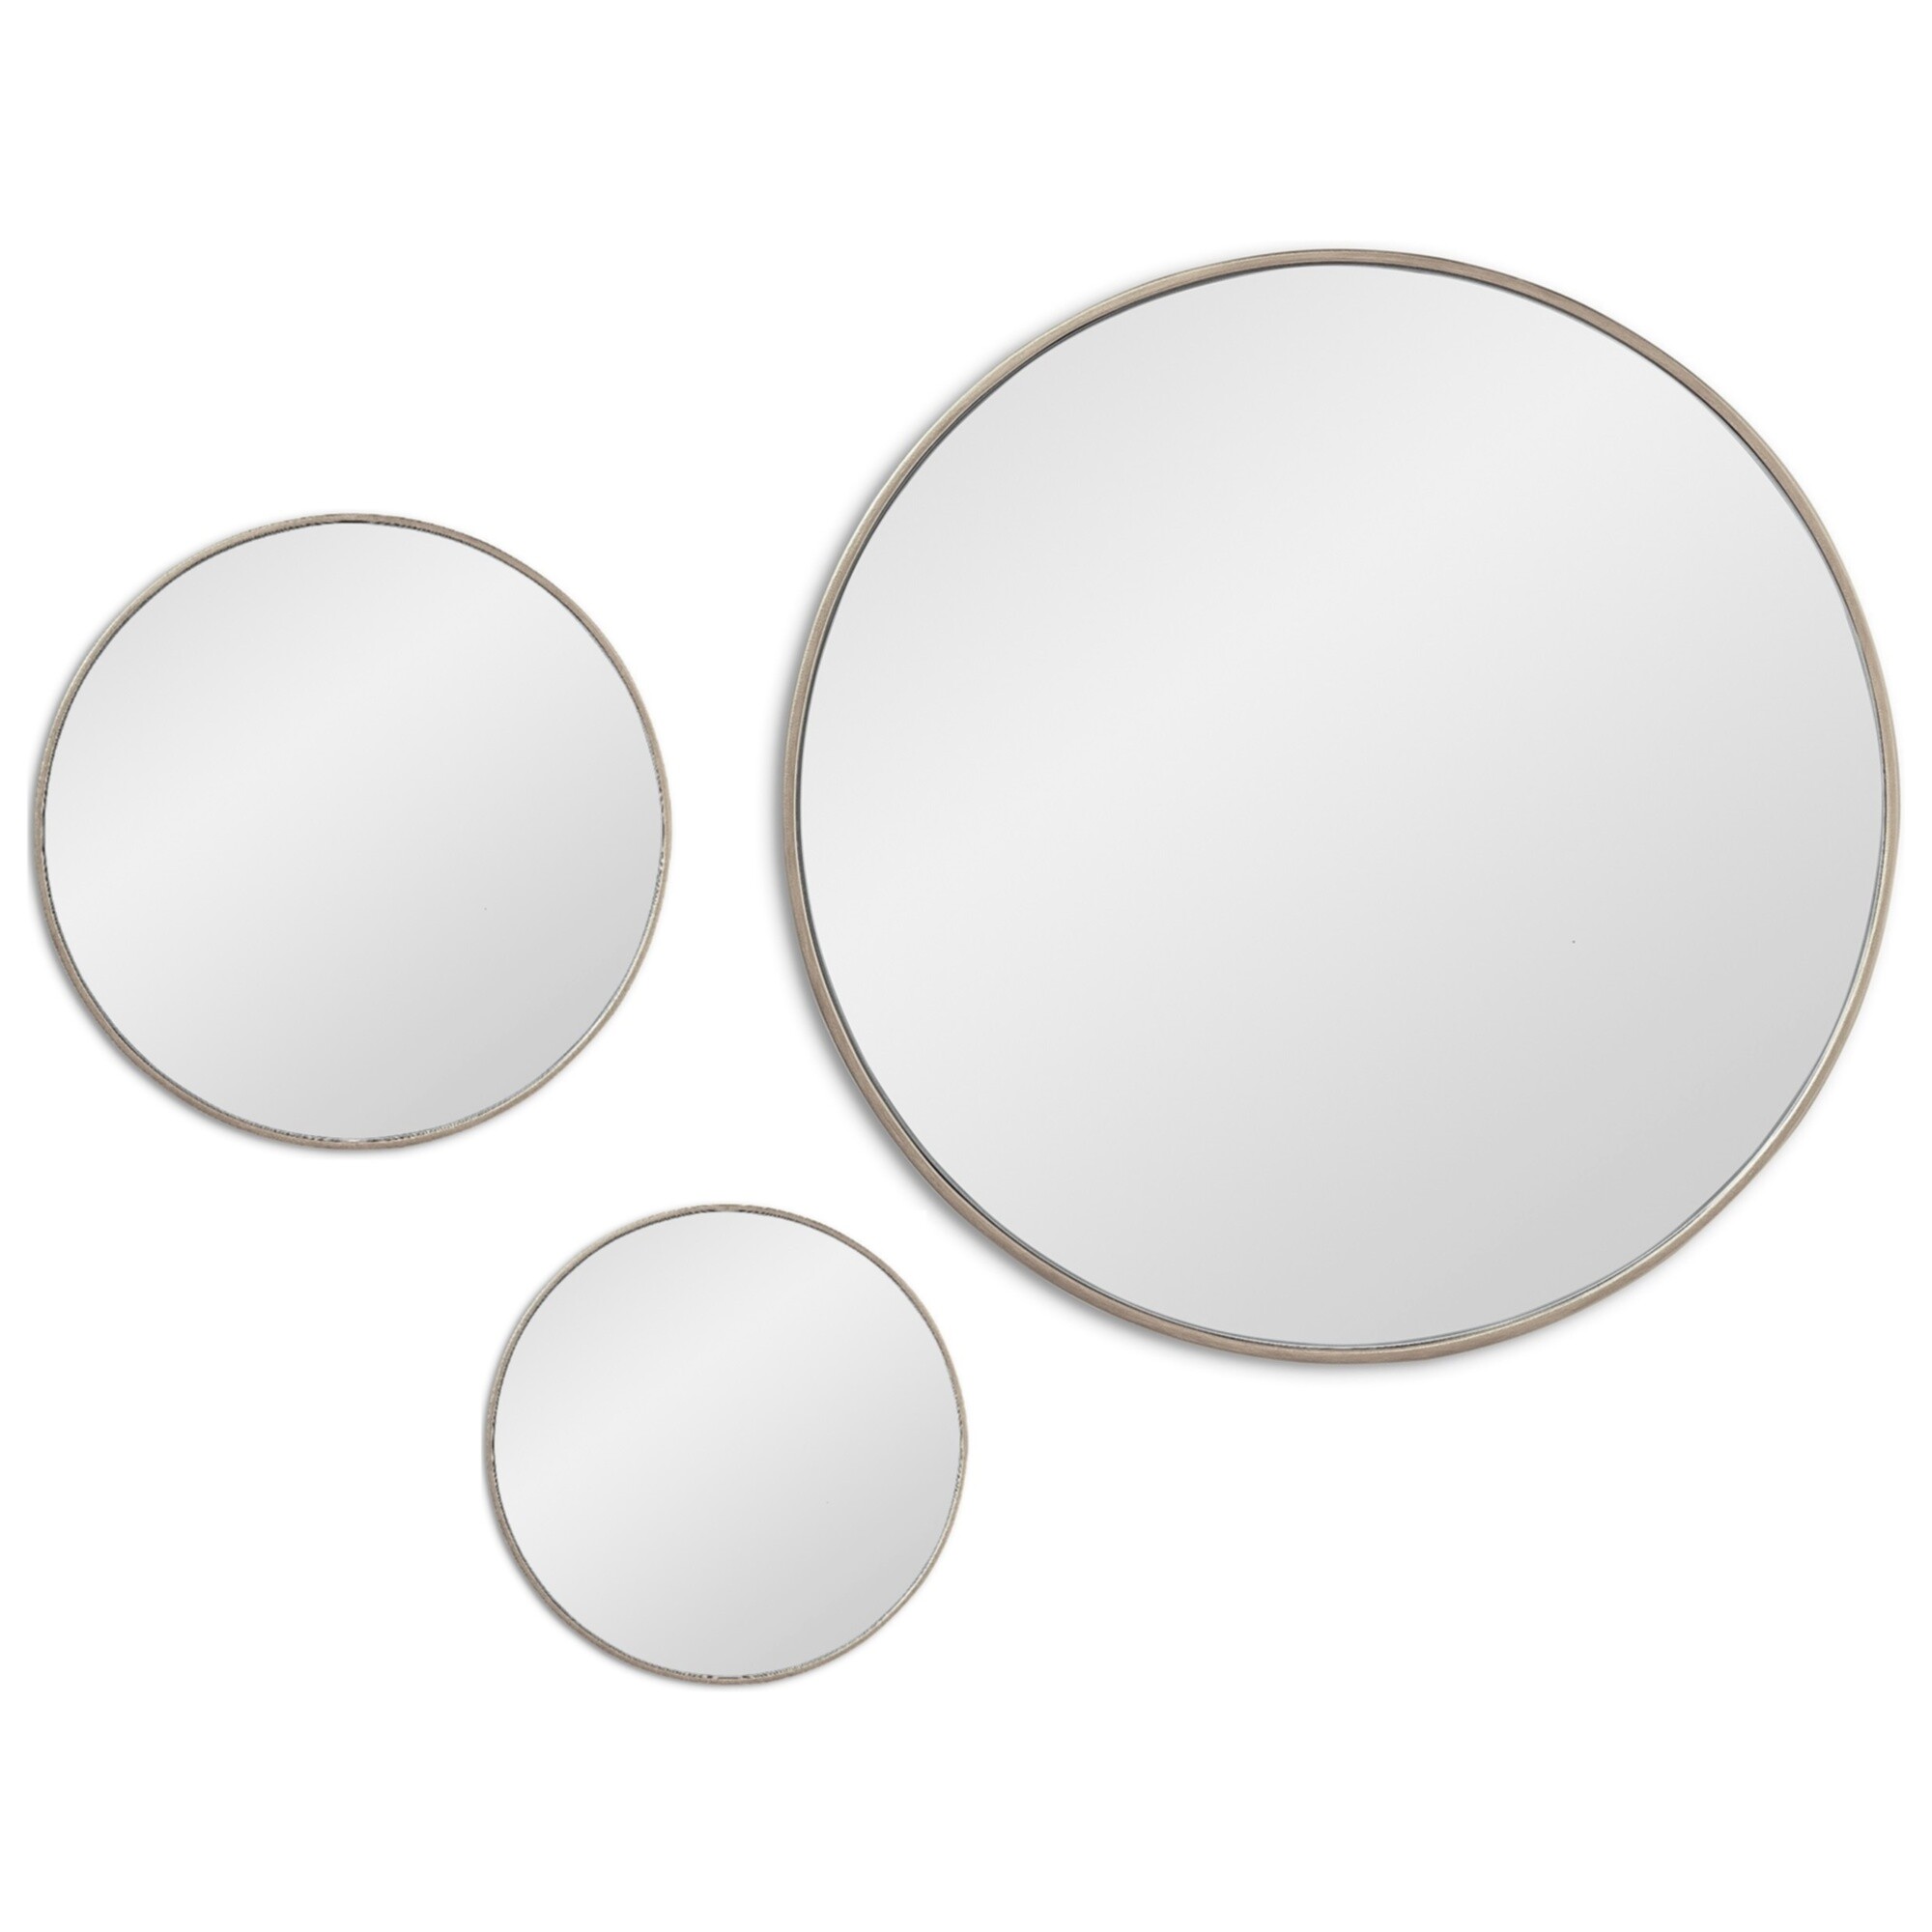 Зеркала настенные круглые в тонкой раме 3 шт серебро Jupiter Silver